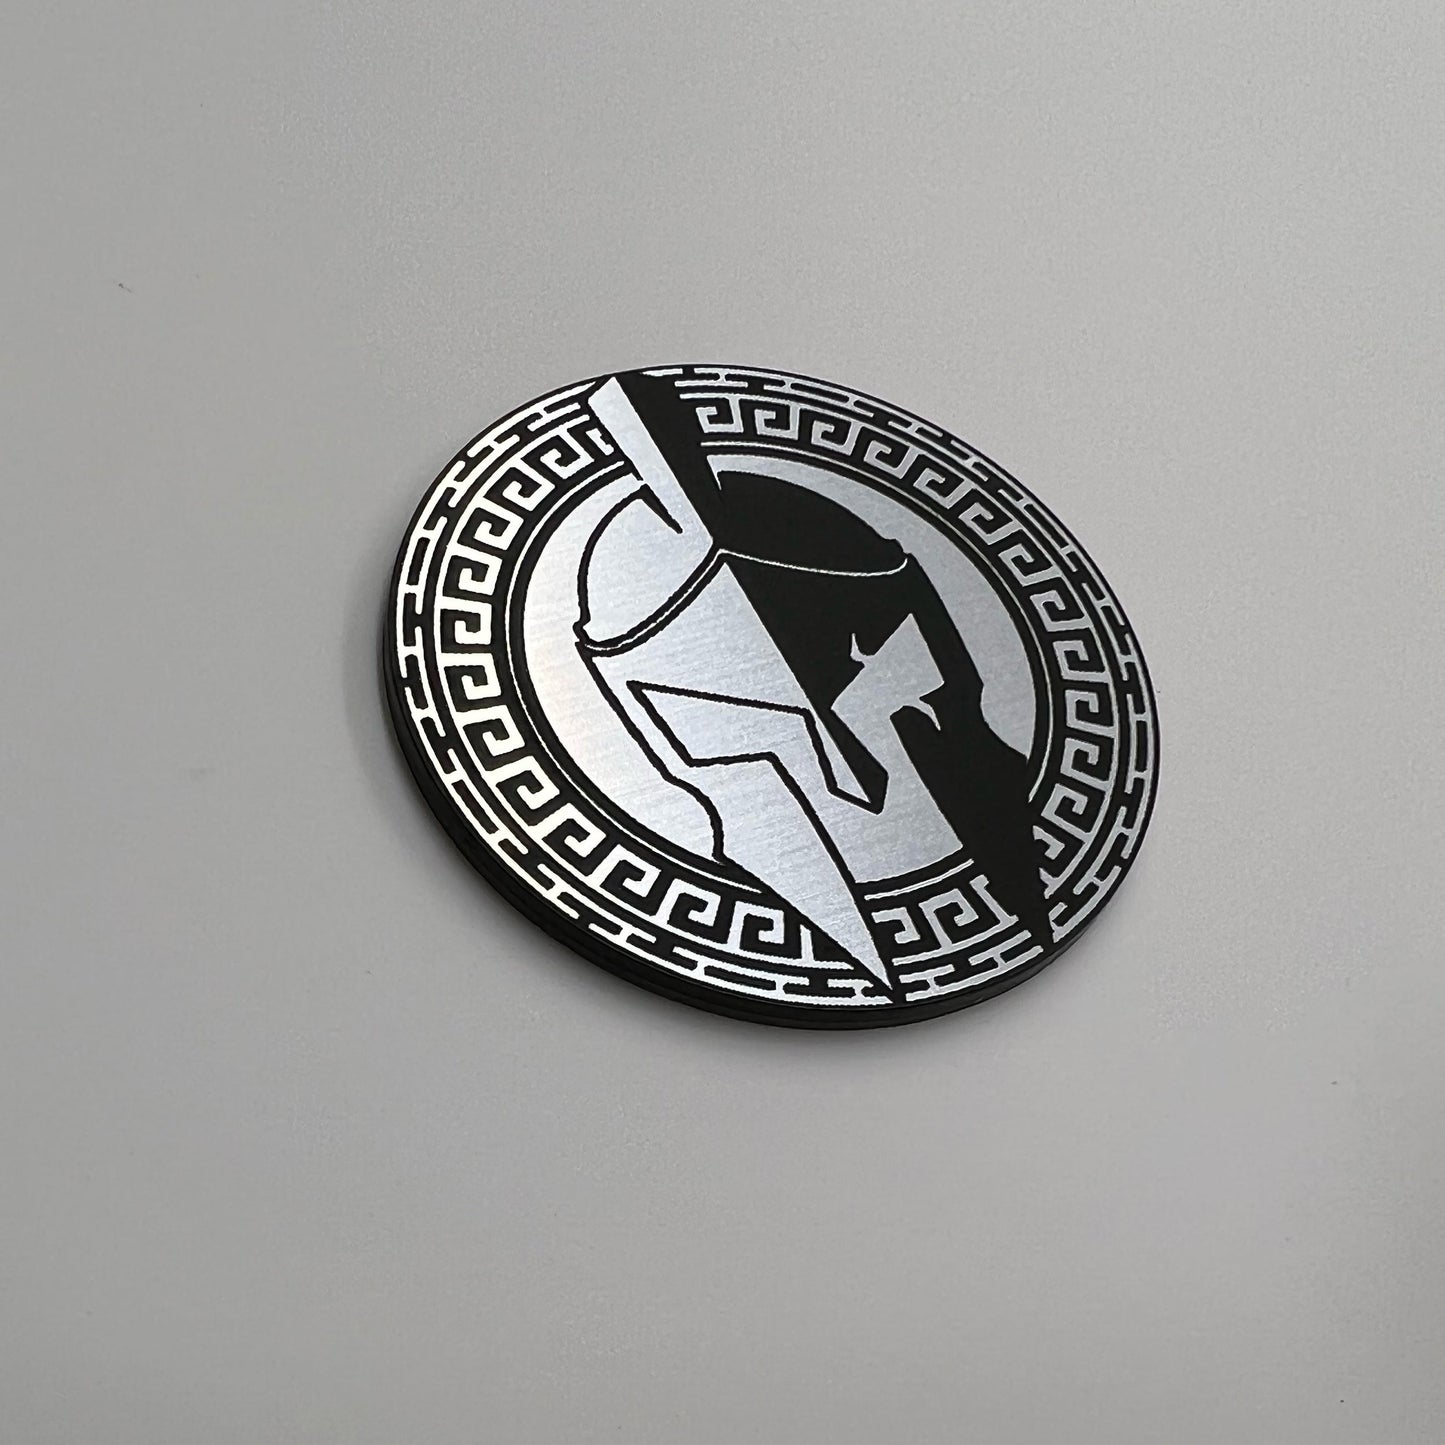 One (1) Spartan Rated Fender Badges fits JEEP Gladiator emblem